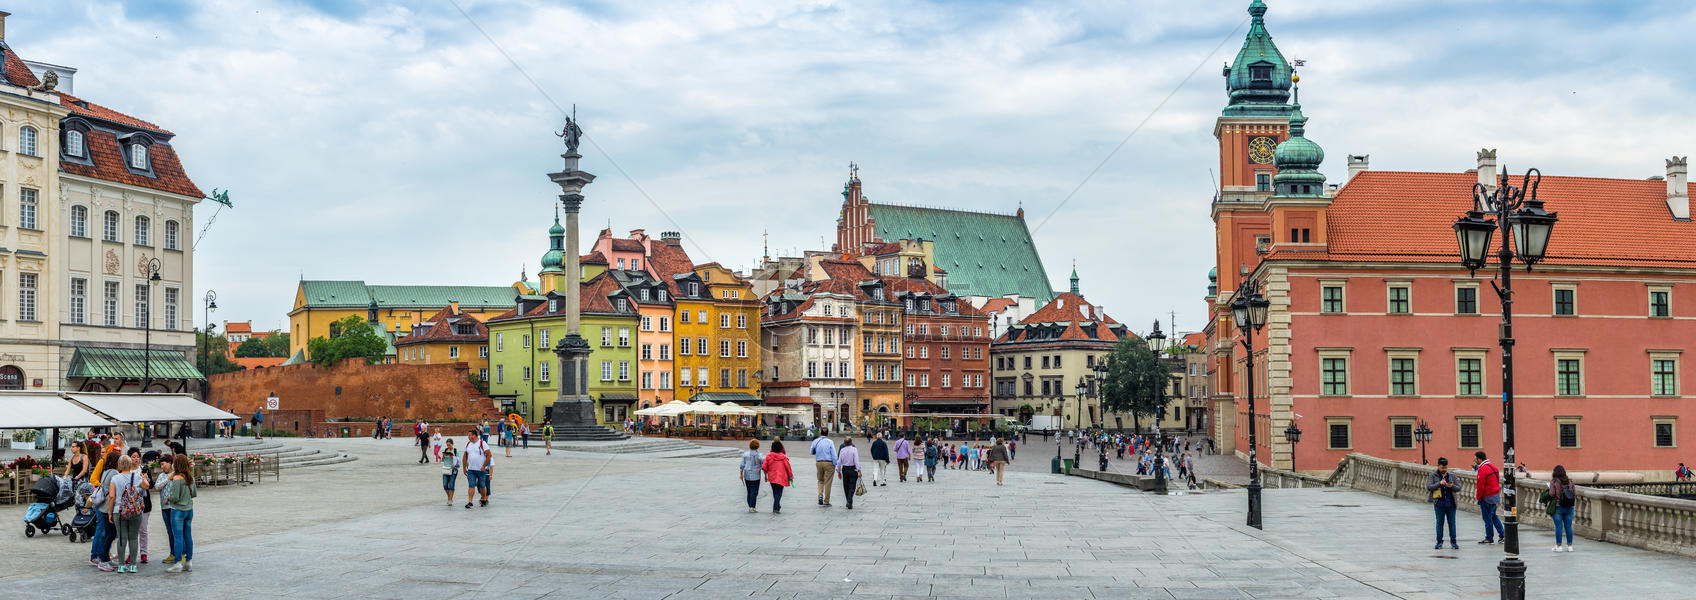 波兰华沙老城全景图图片素材免费下载